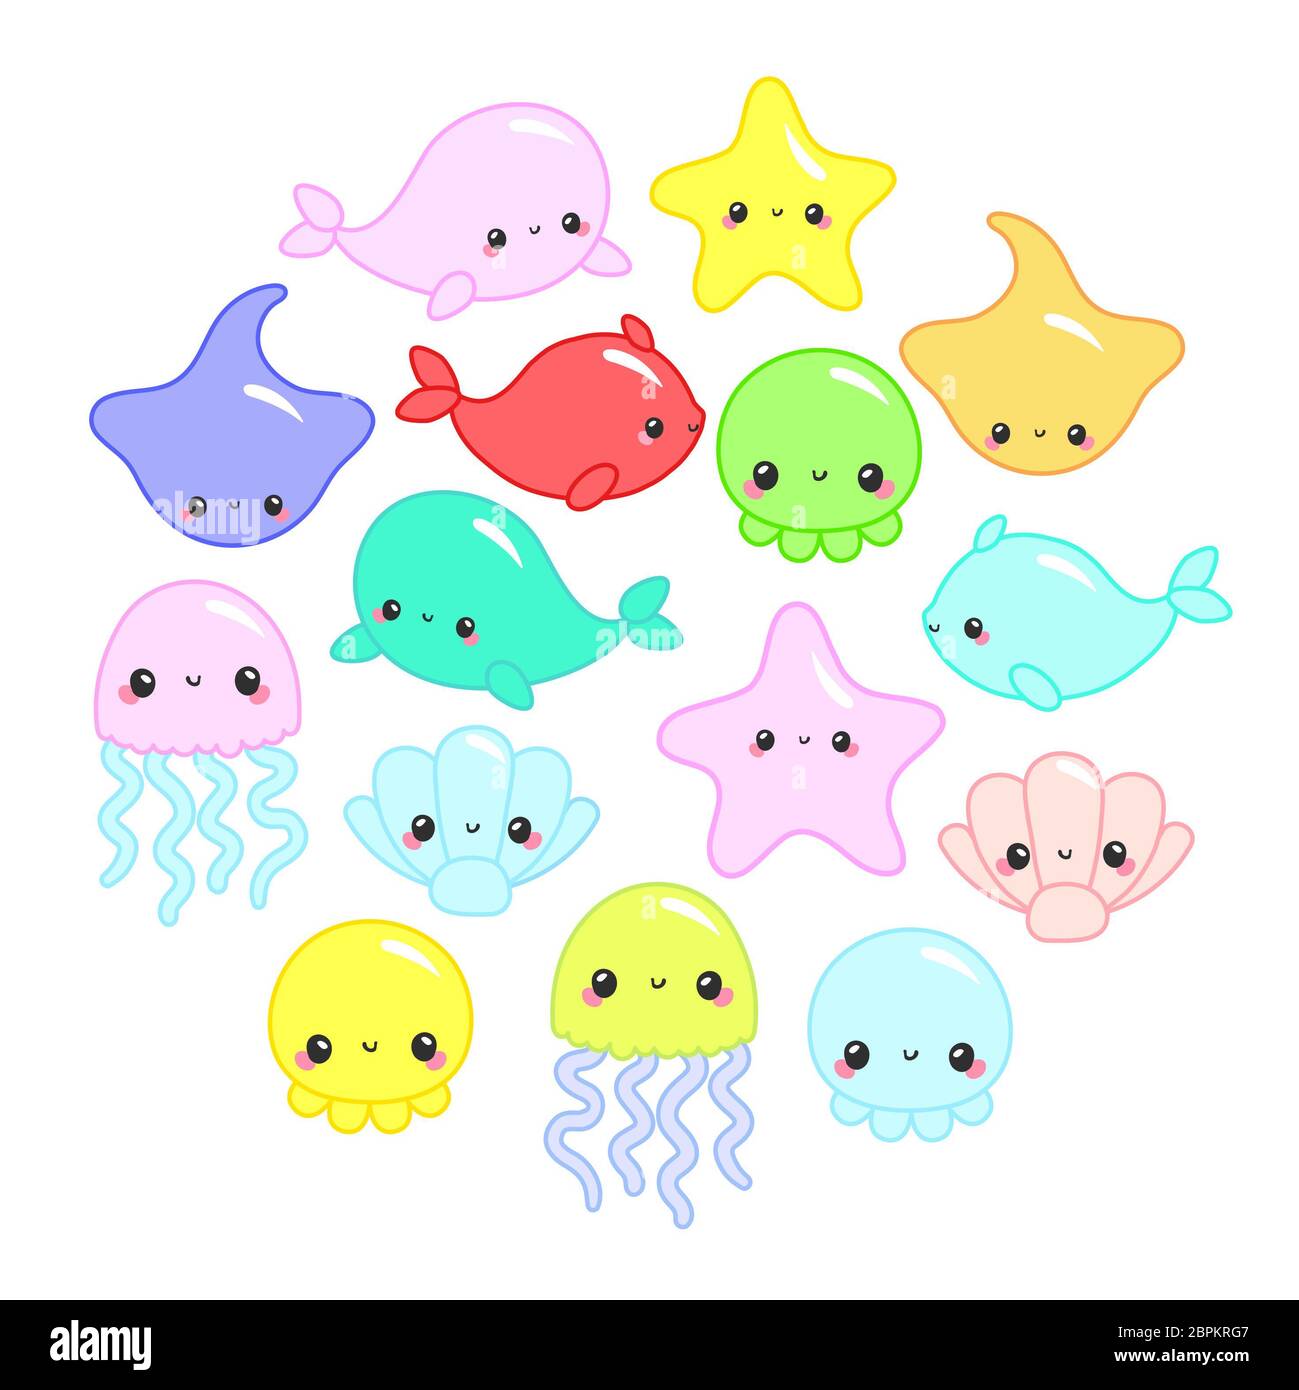 Bunte cartoon Meer Tiere im Kreis für Baby designs Cute, Kinder Einladungen und Grußkarten. Cute Vector Ozean mit Meer Kreaturen für Stockfoto